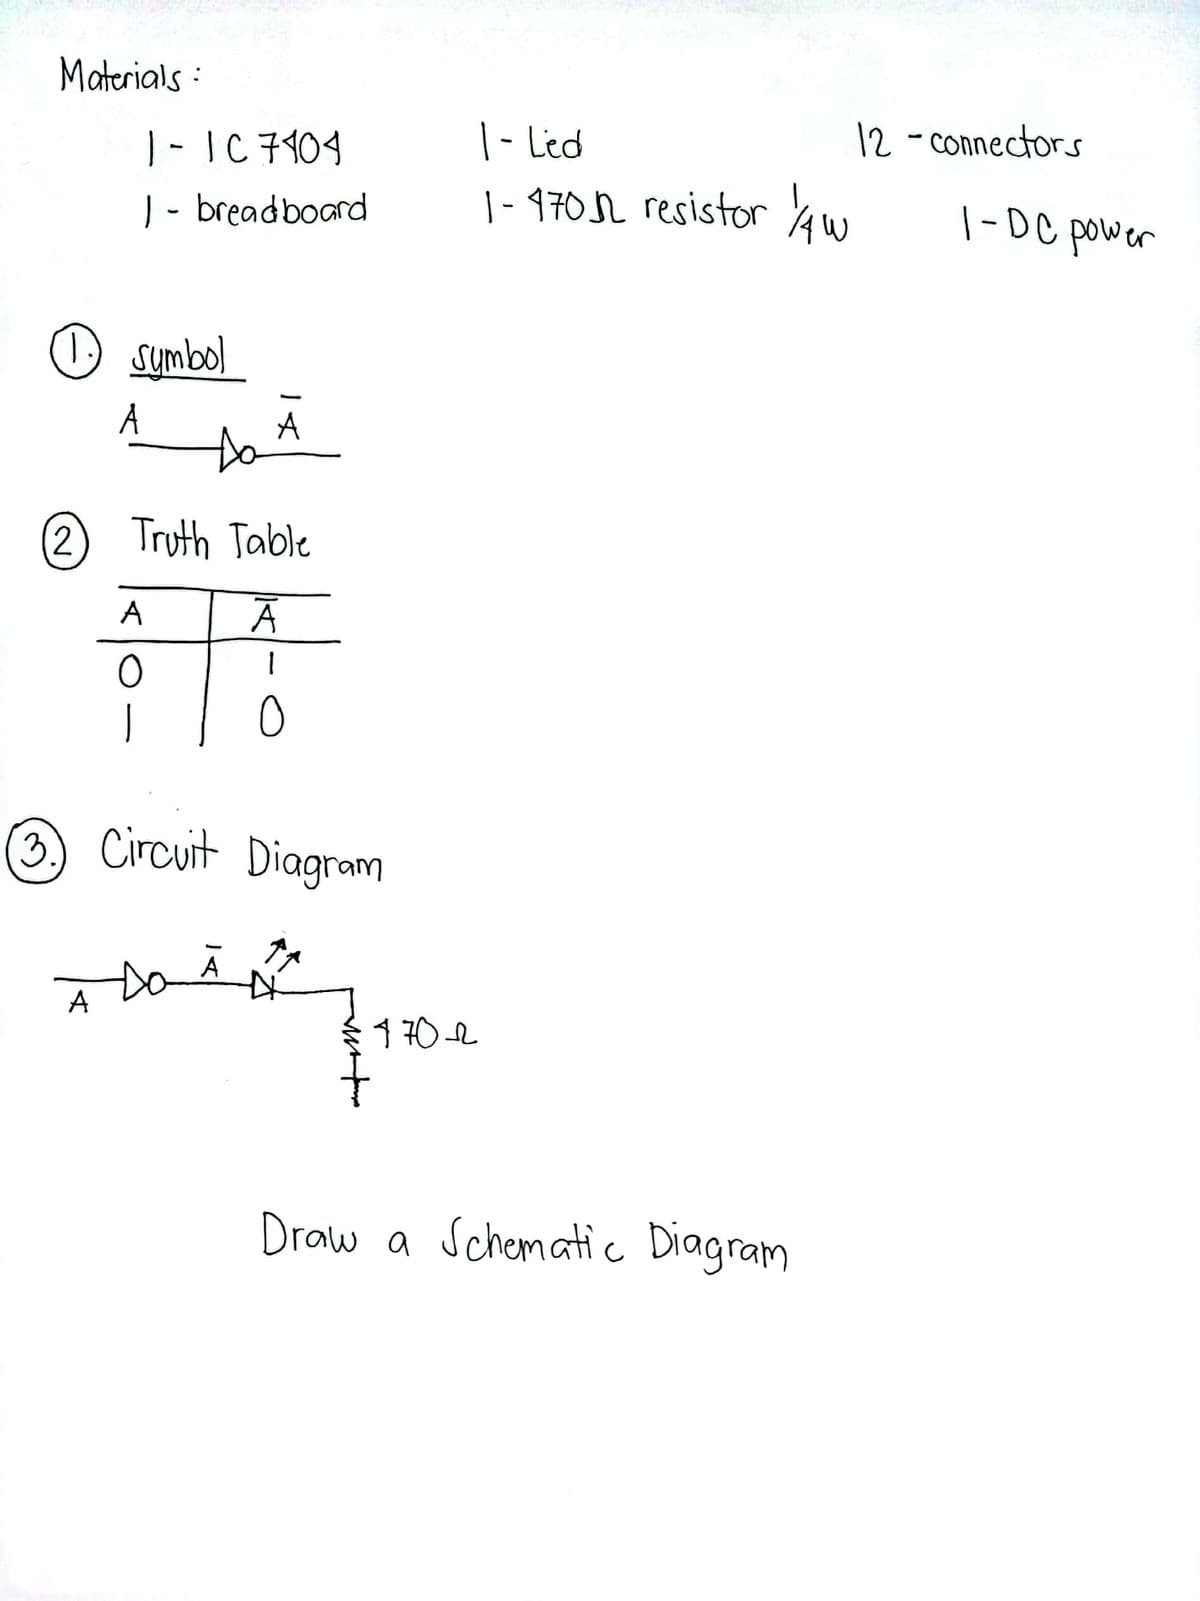 Materials :
12 - connectors
|- IC 7104
| - breadboard
|- Led
| - 4702 resistor Aw
| -DC power
O sumbol
A
to
A
(2)
Truth Table
ㅇ
3 Circuit Diagram
Da
A
1 70L
Draw a Schematic Diagram
